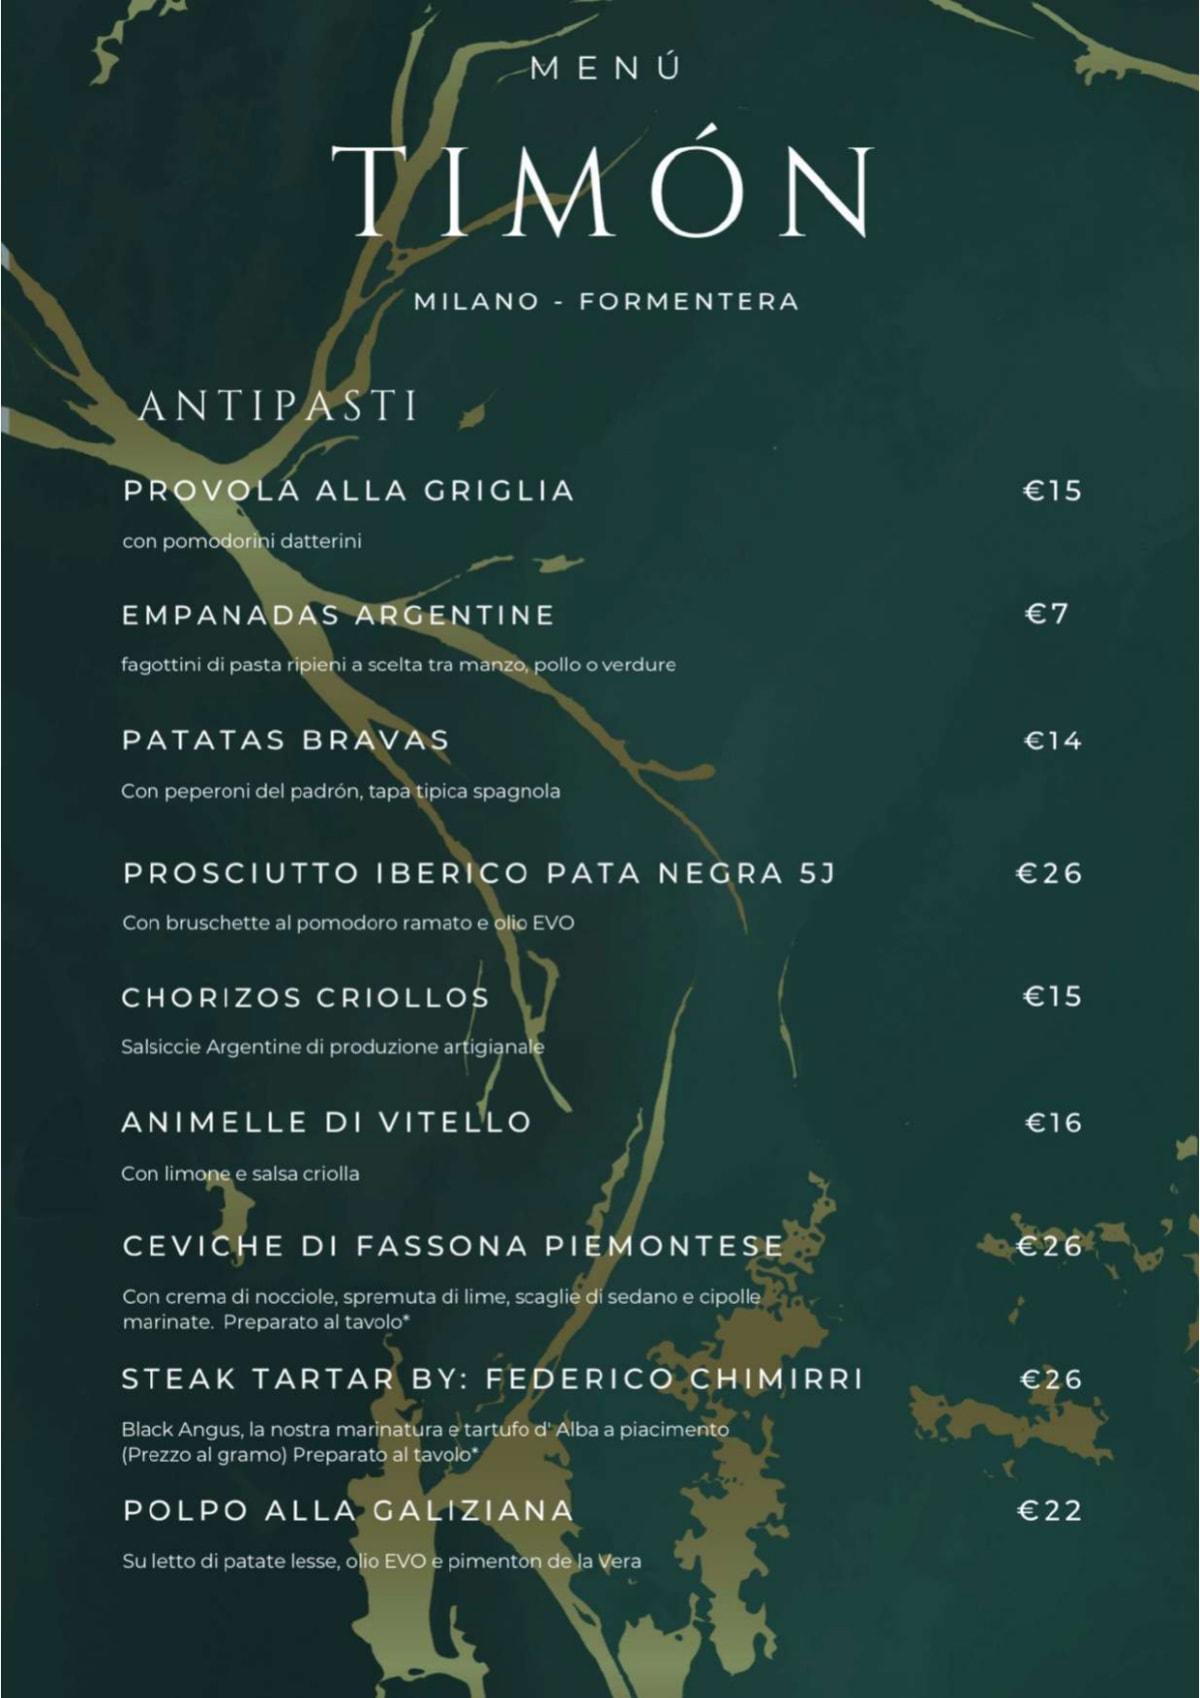 Timon Grill Milano menu